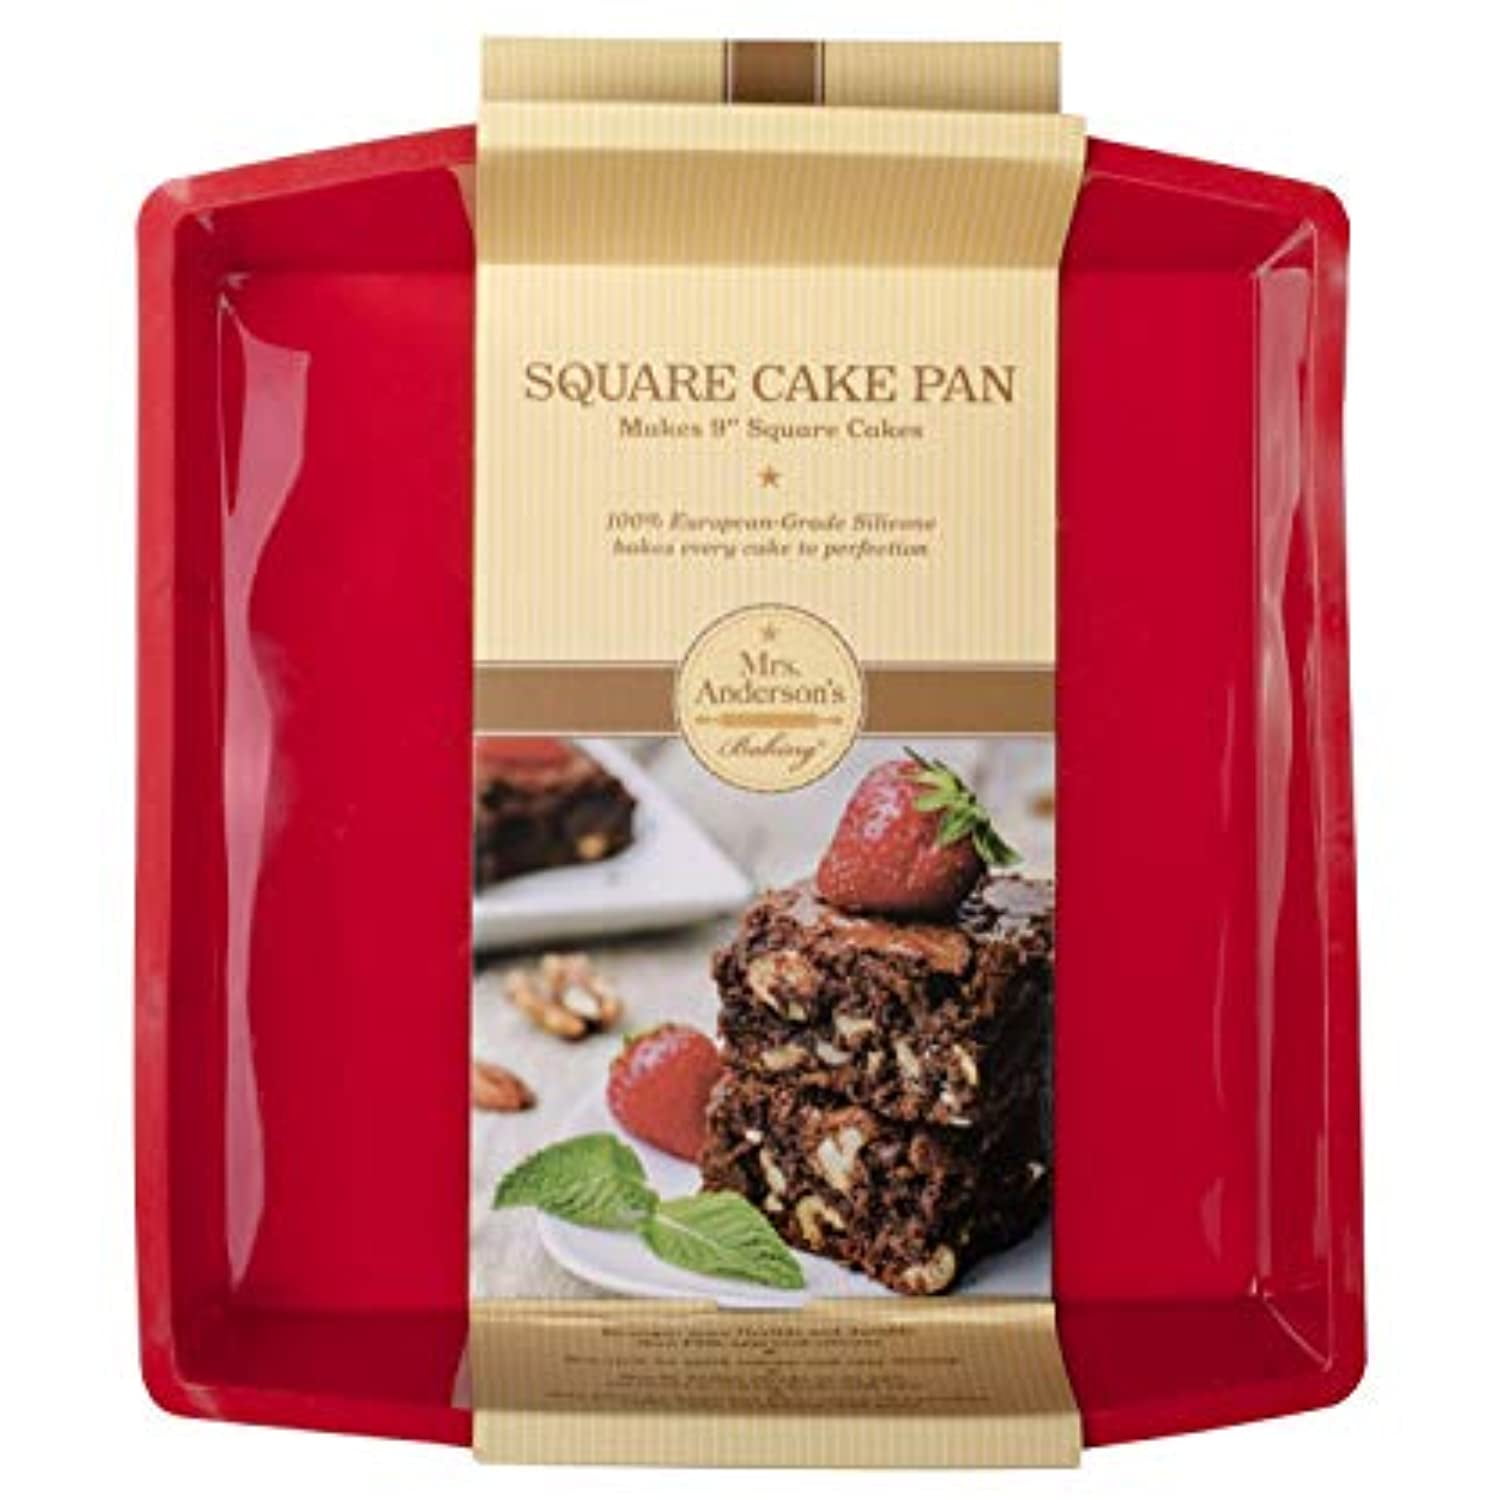 Treat™ 9 Square Cake Pan